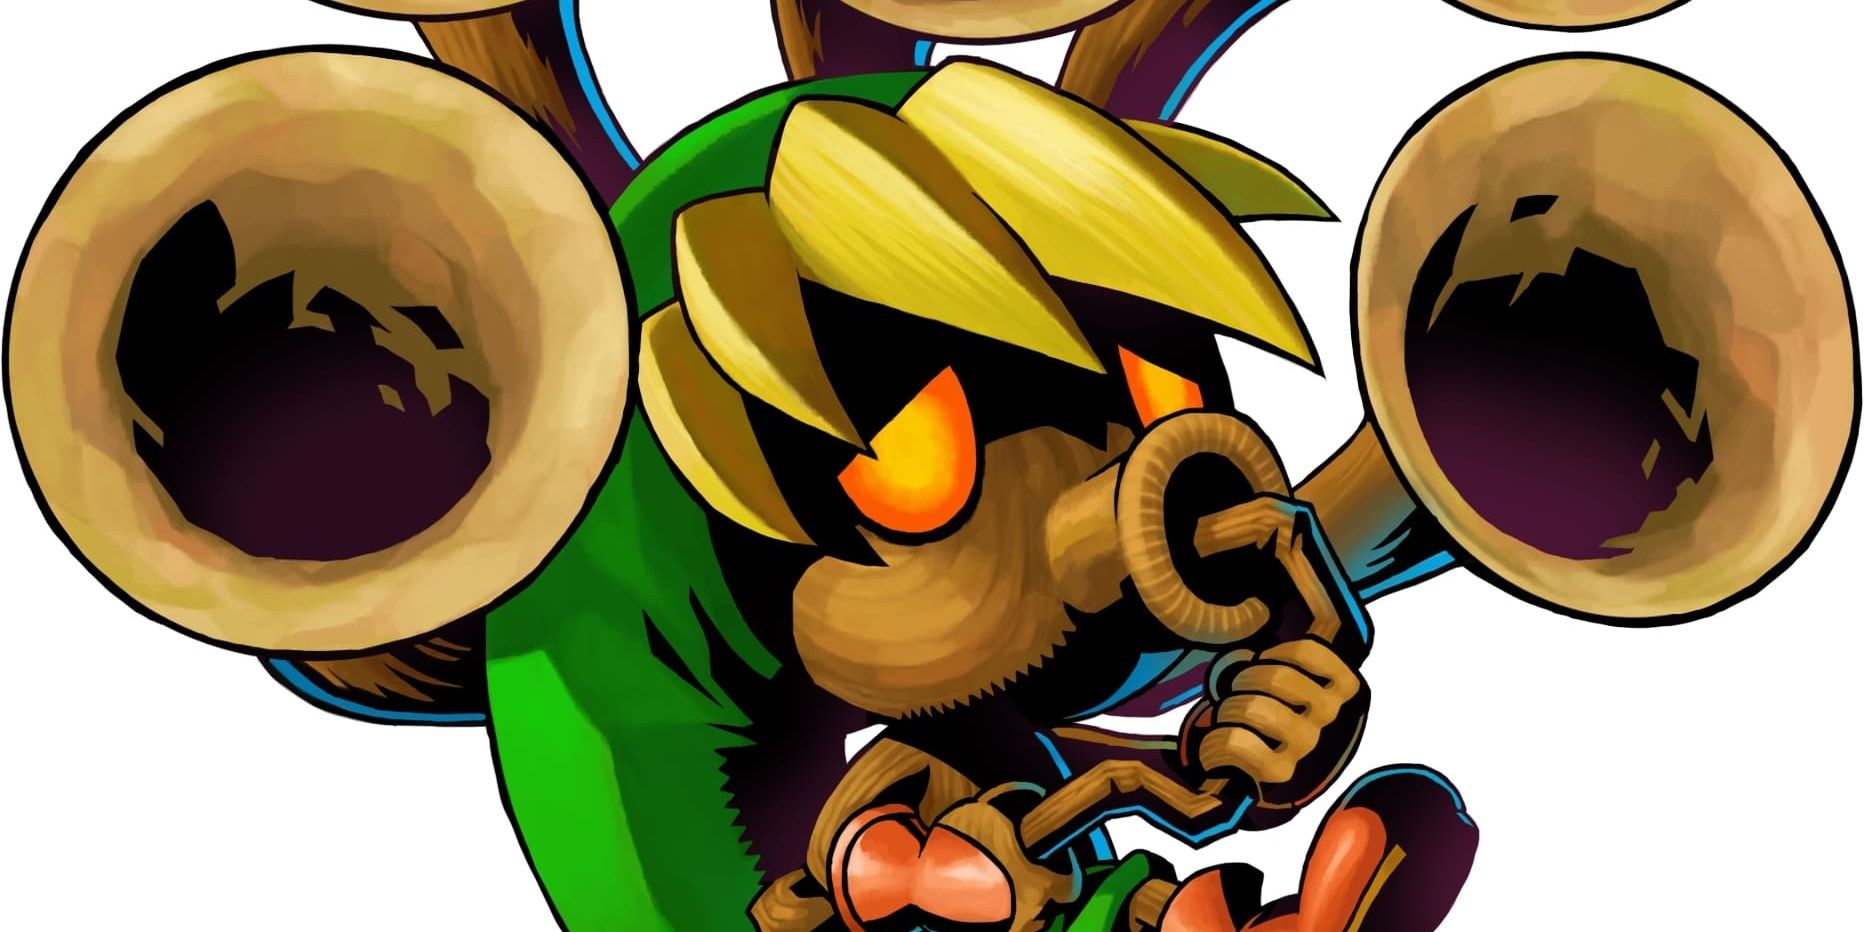 Official art of Link as a Deku